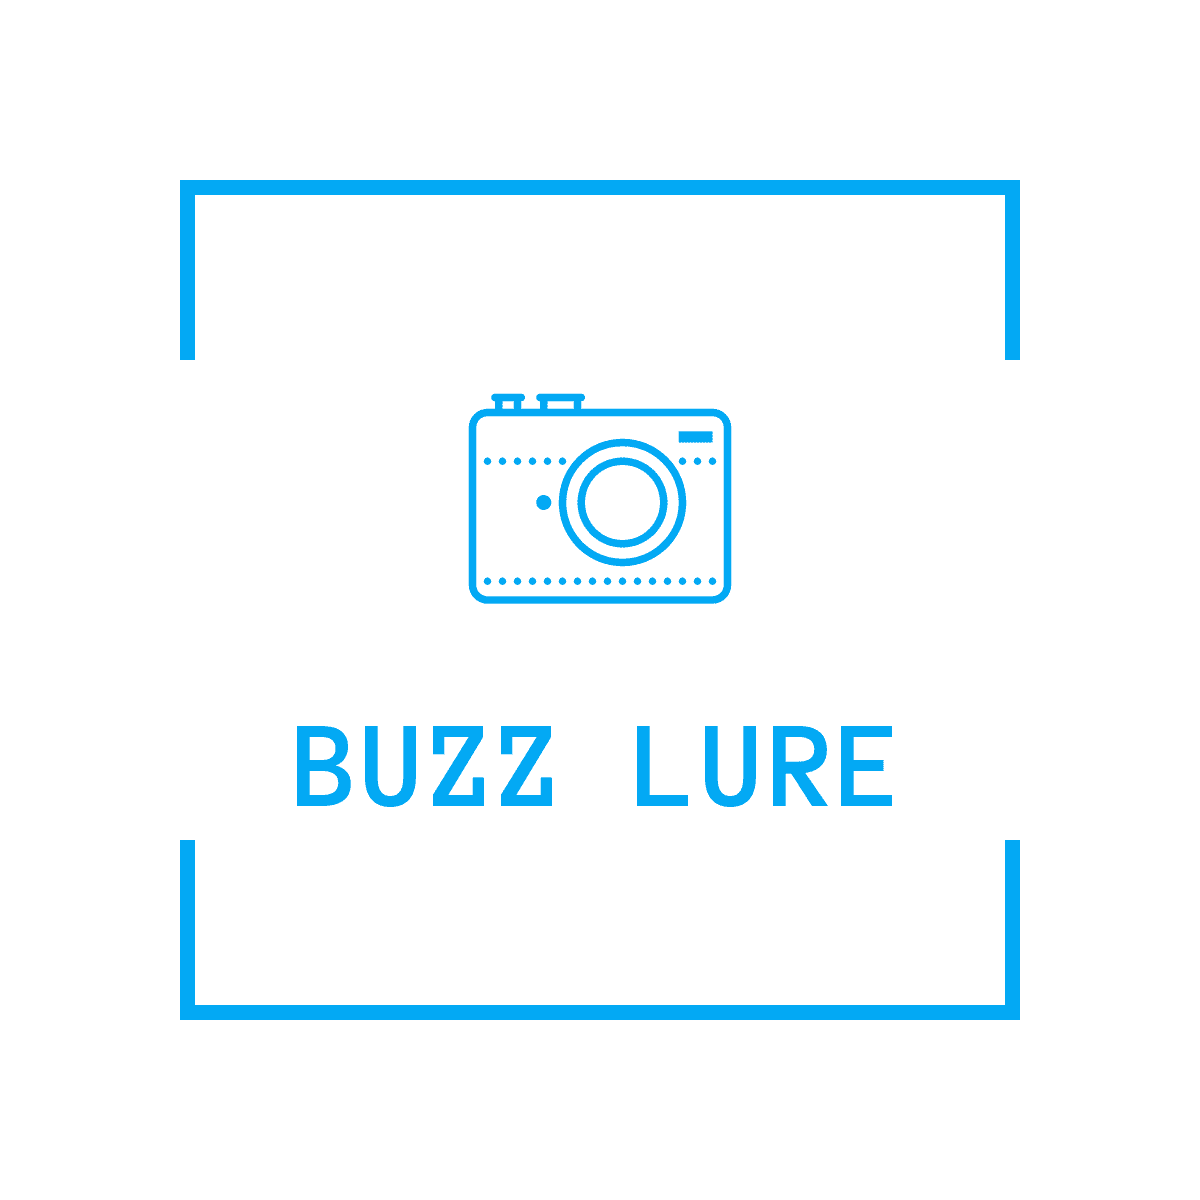 BUZZ LURE - バズルアー